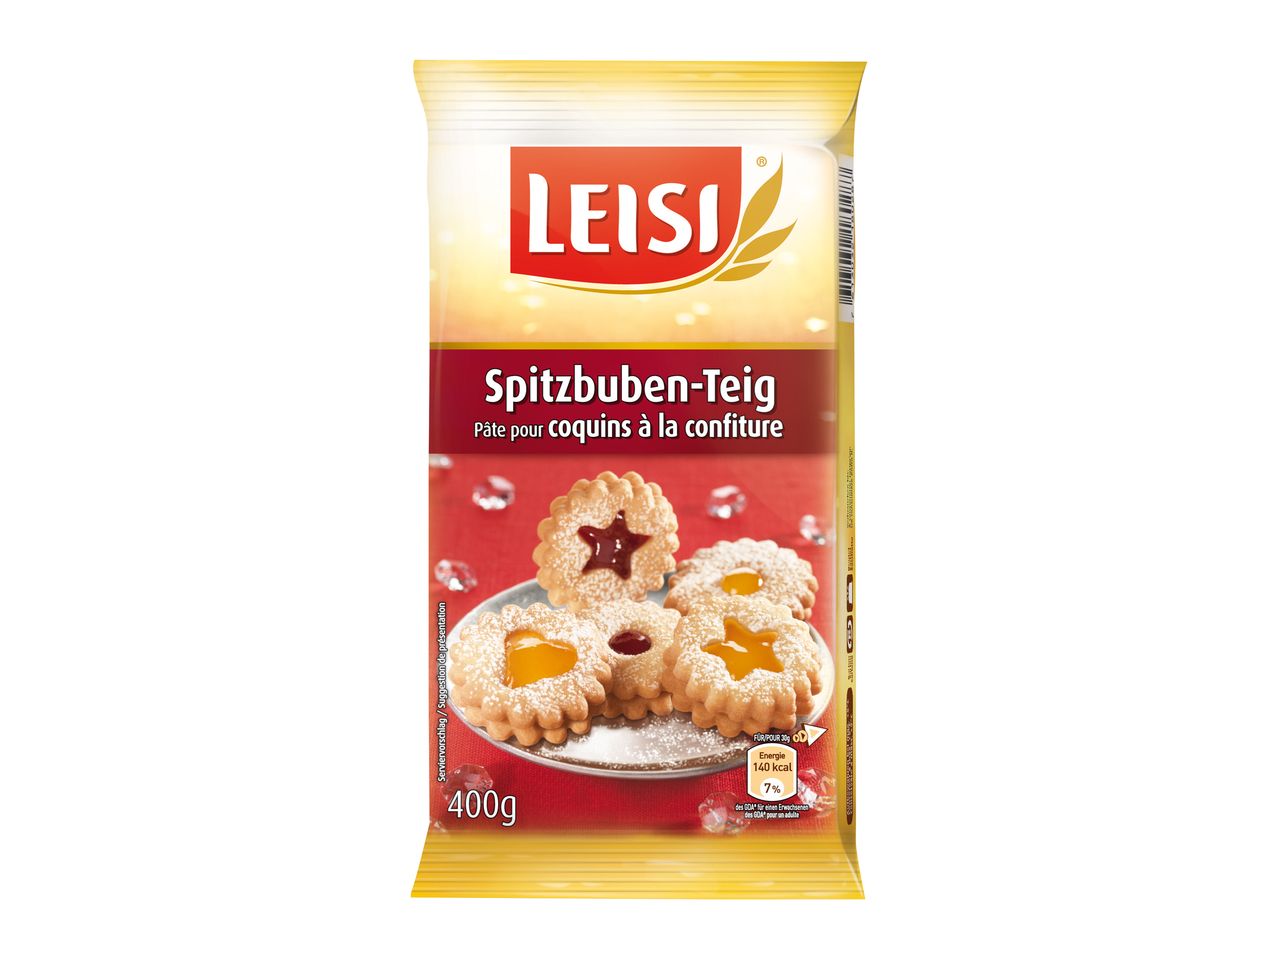 Leisi Spitzbuben-Teig